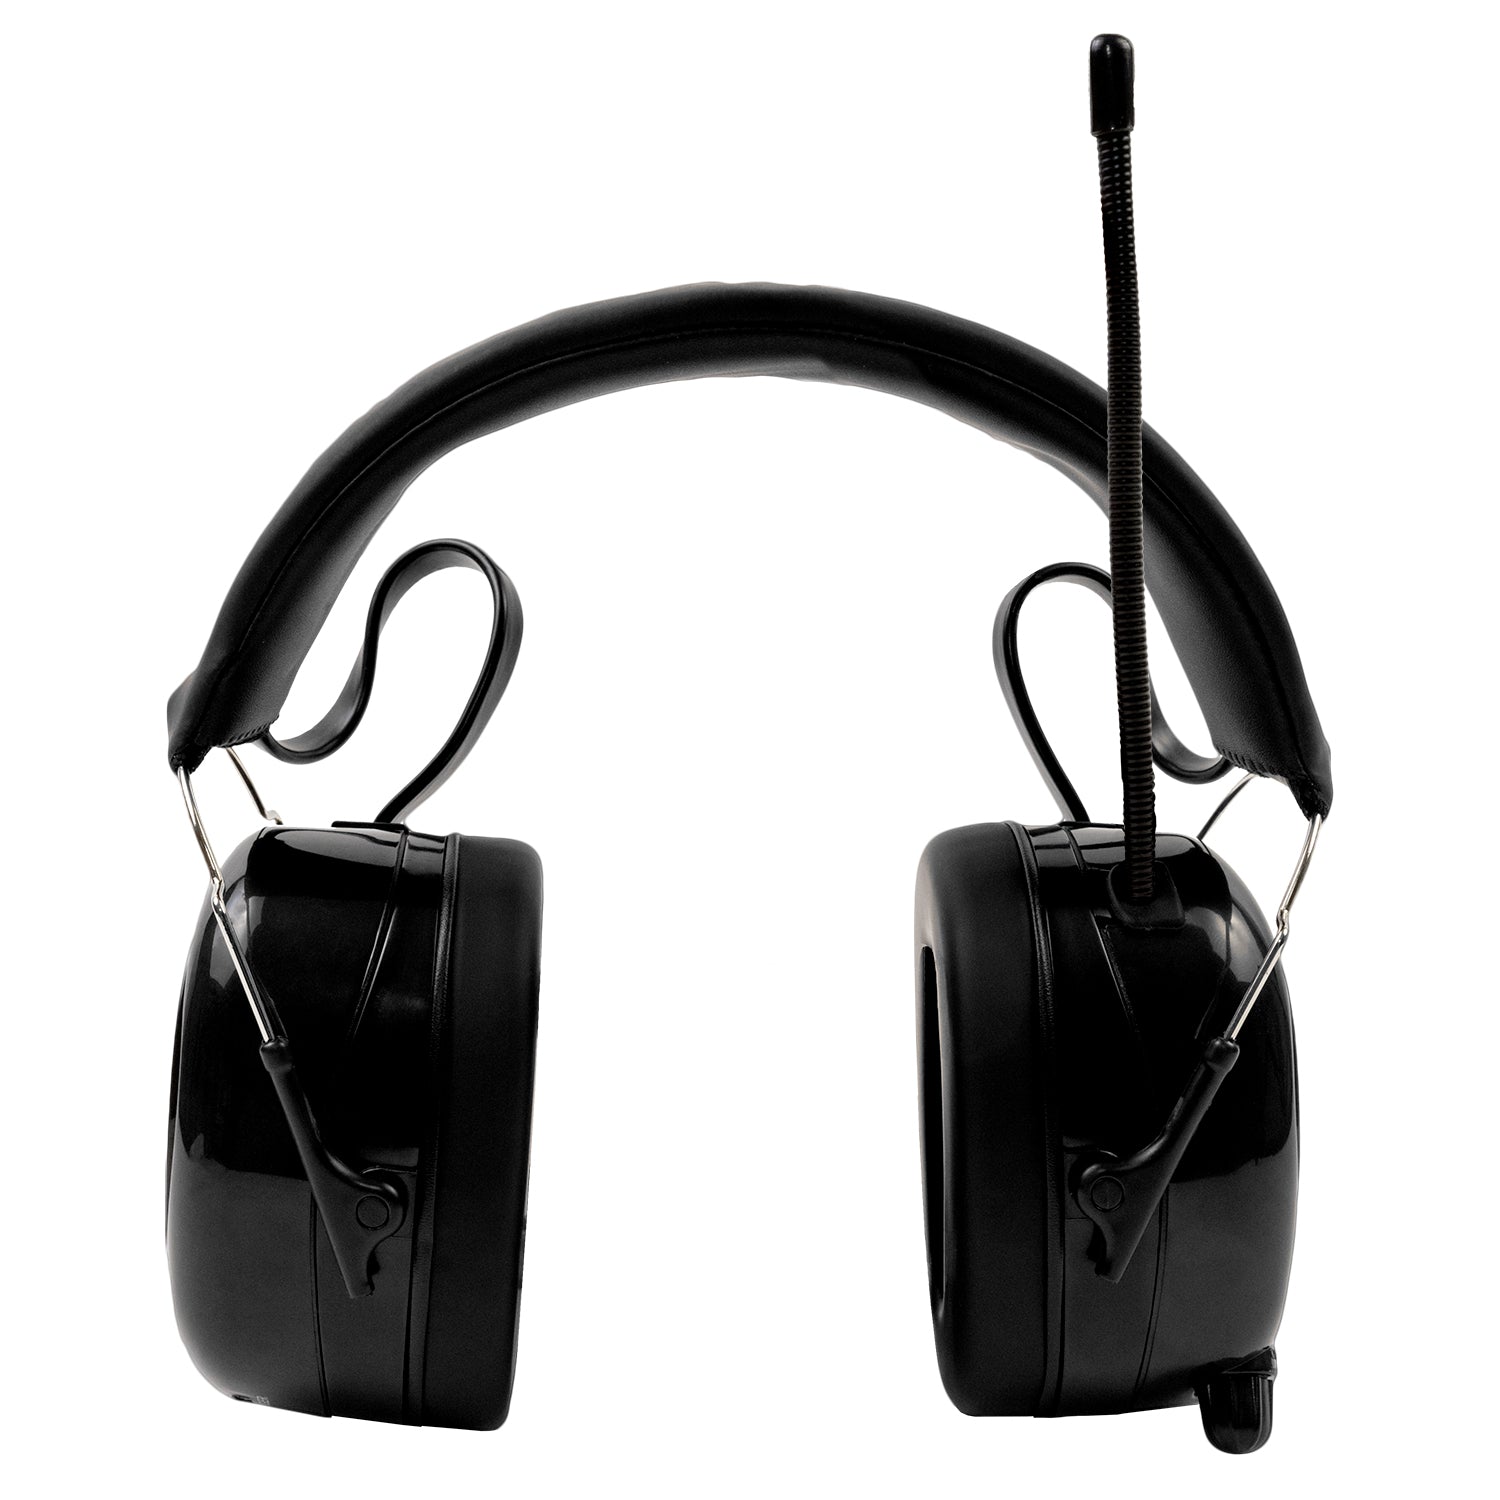 24h Mans Radio and Bluetooth Oorkap voor gehoor bescherming en muziek tijdens uw favoriete races – Alpine Hearing Protection